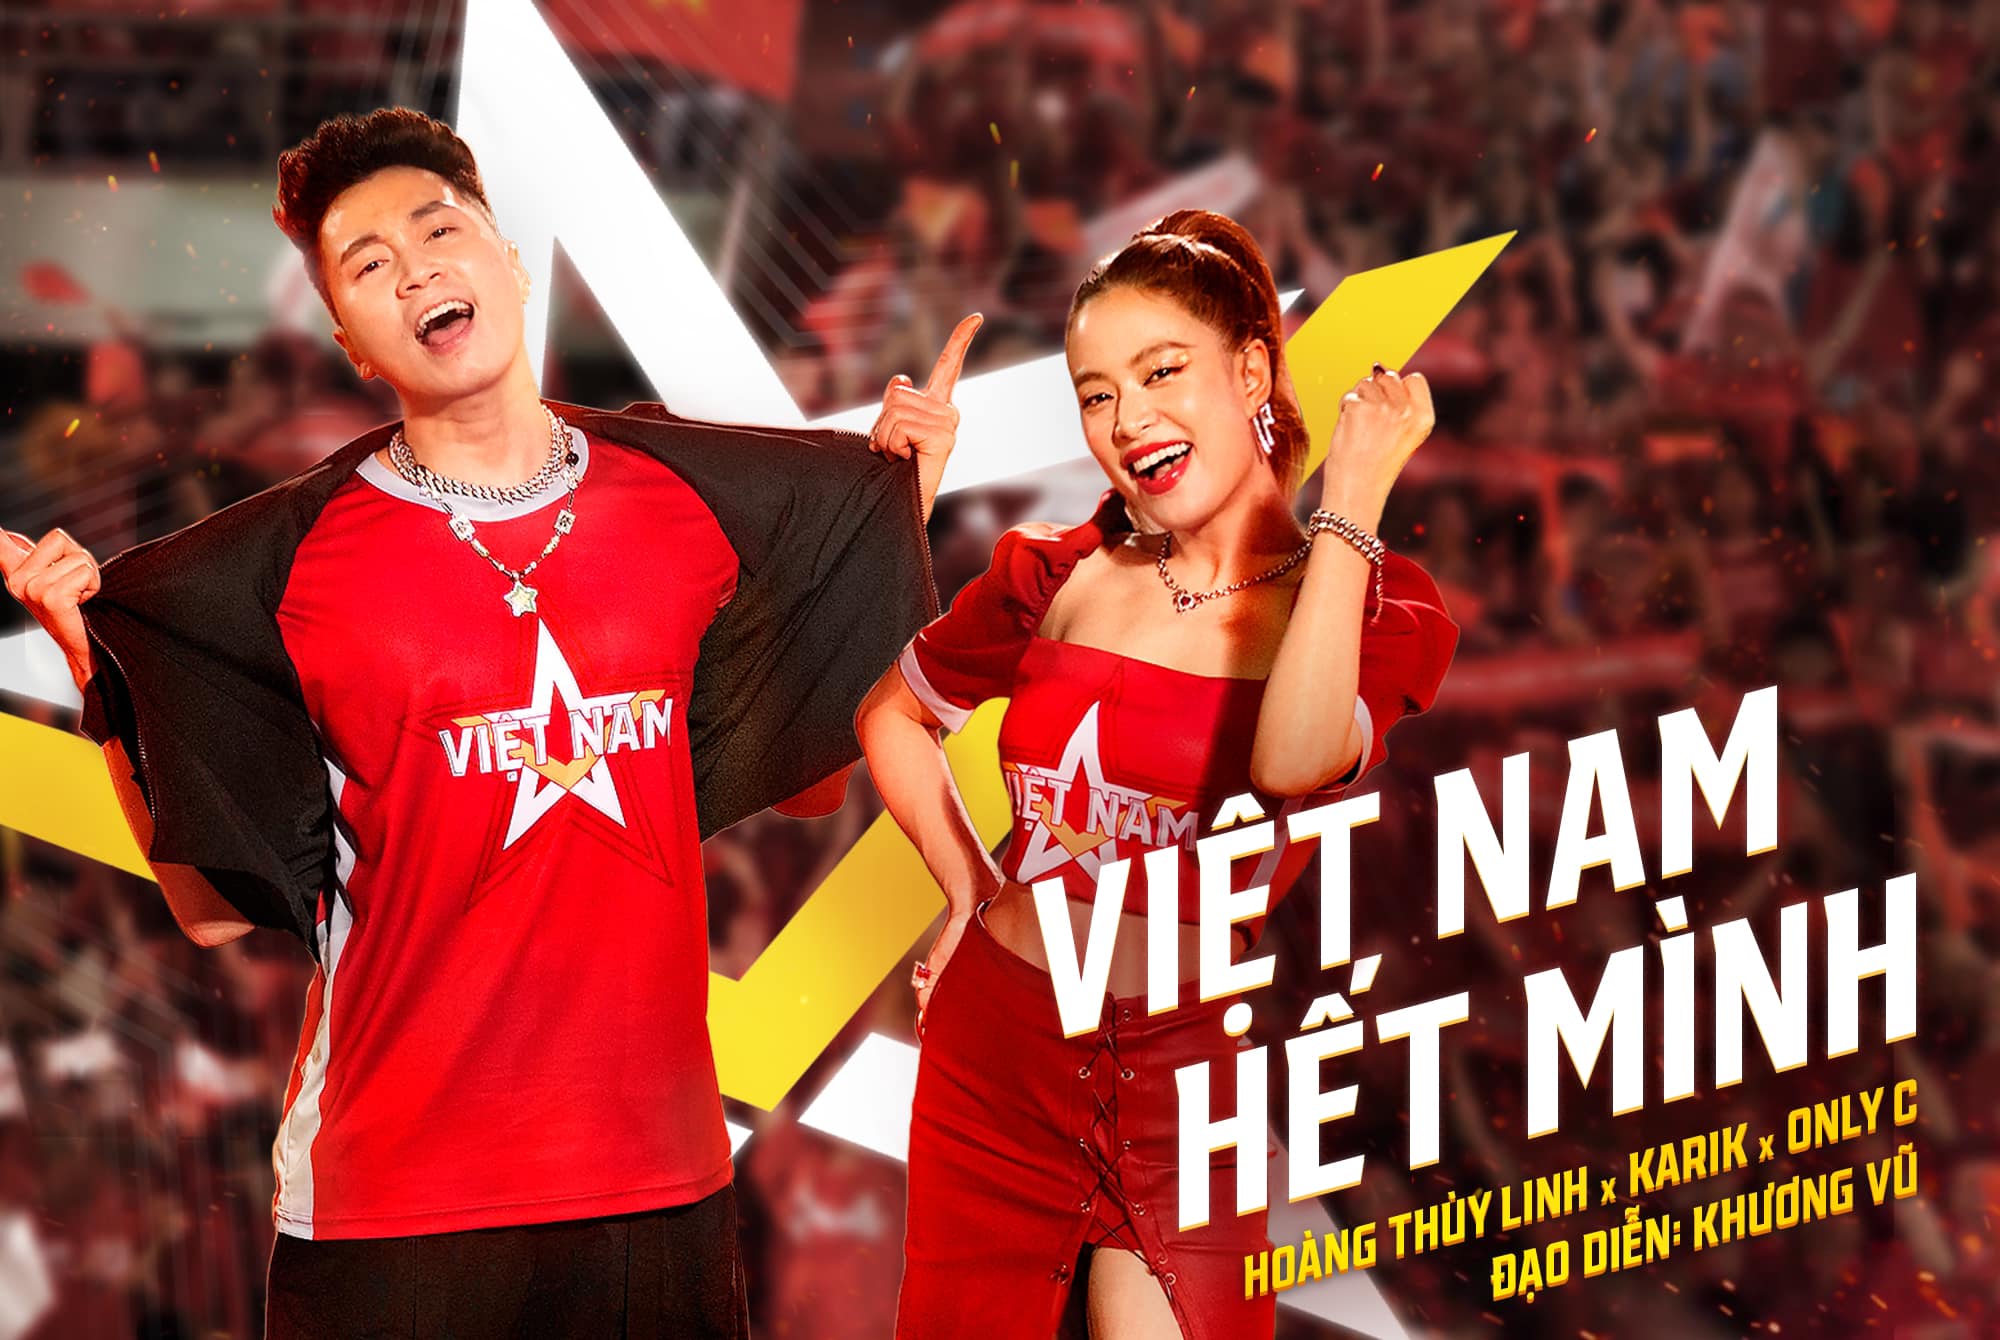 Ca khúc Việt Nam hết mình nhận được nhiều sự ủng hộ của khán giả.